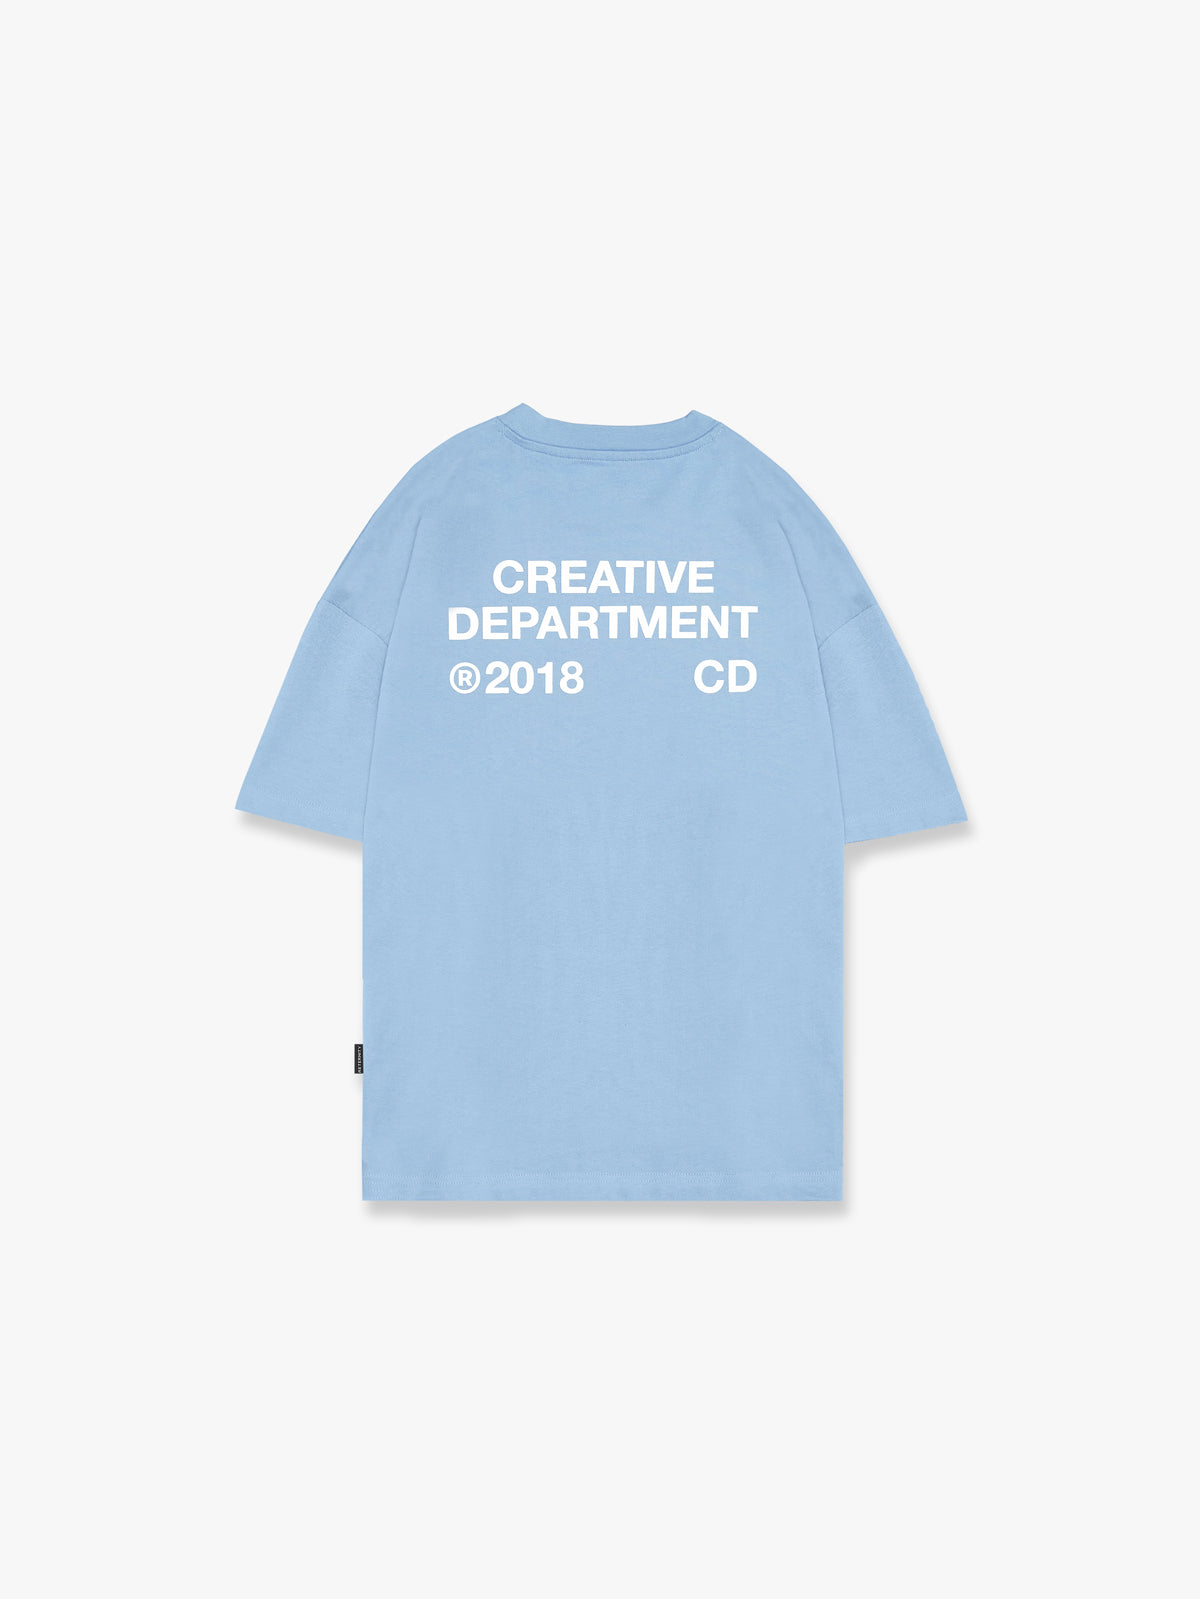 CREATIVE DEPT T-SHIRT - LIGHT BLUE